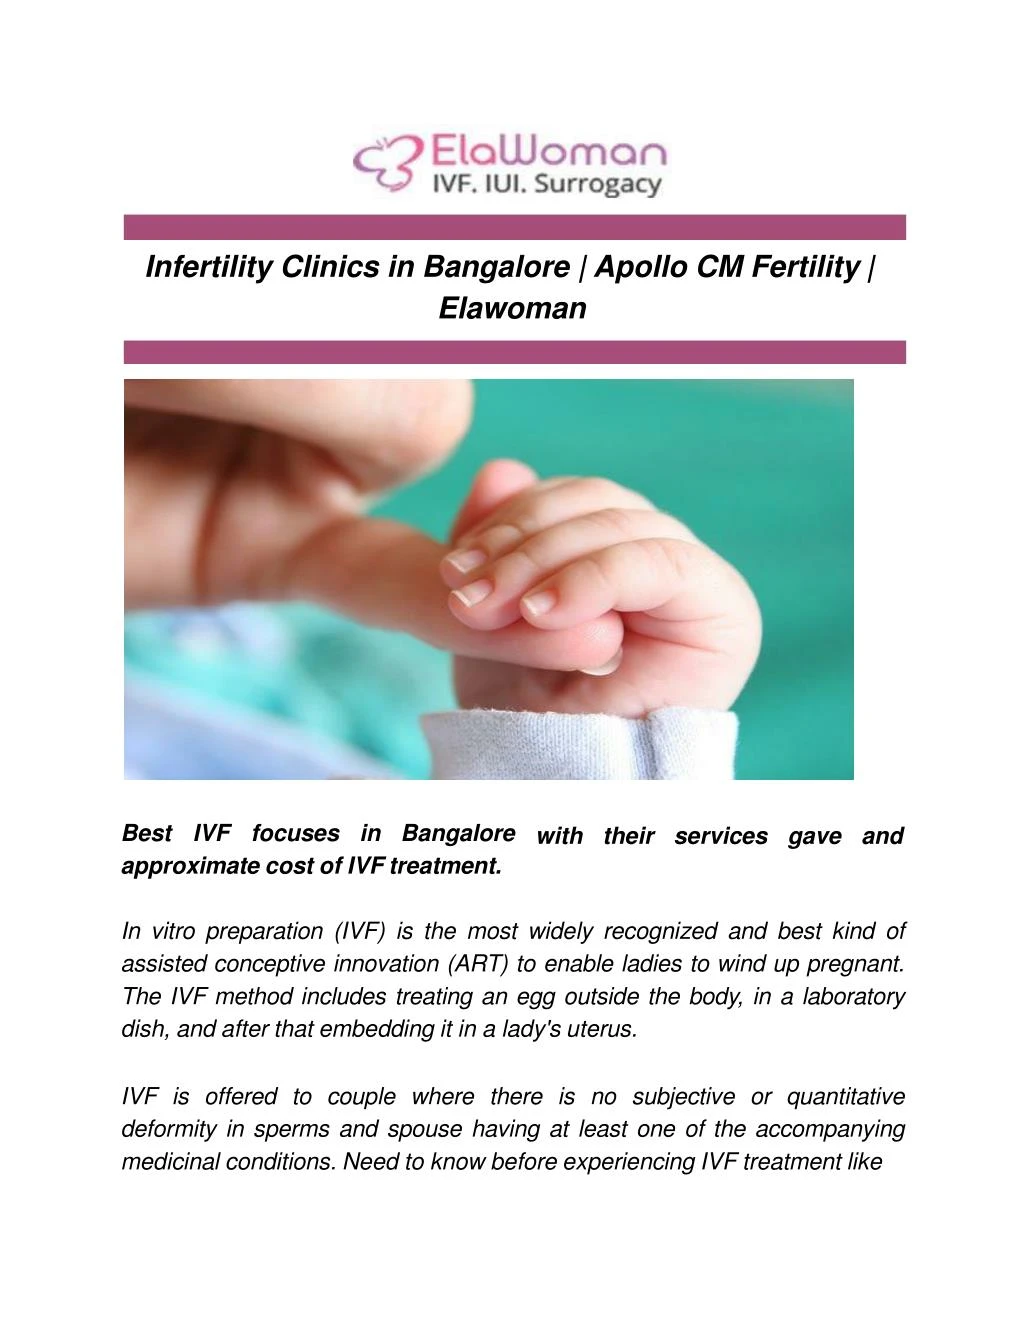 infertility clinics in bangalore apollo